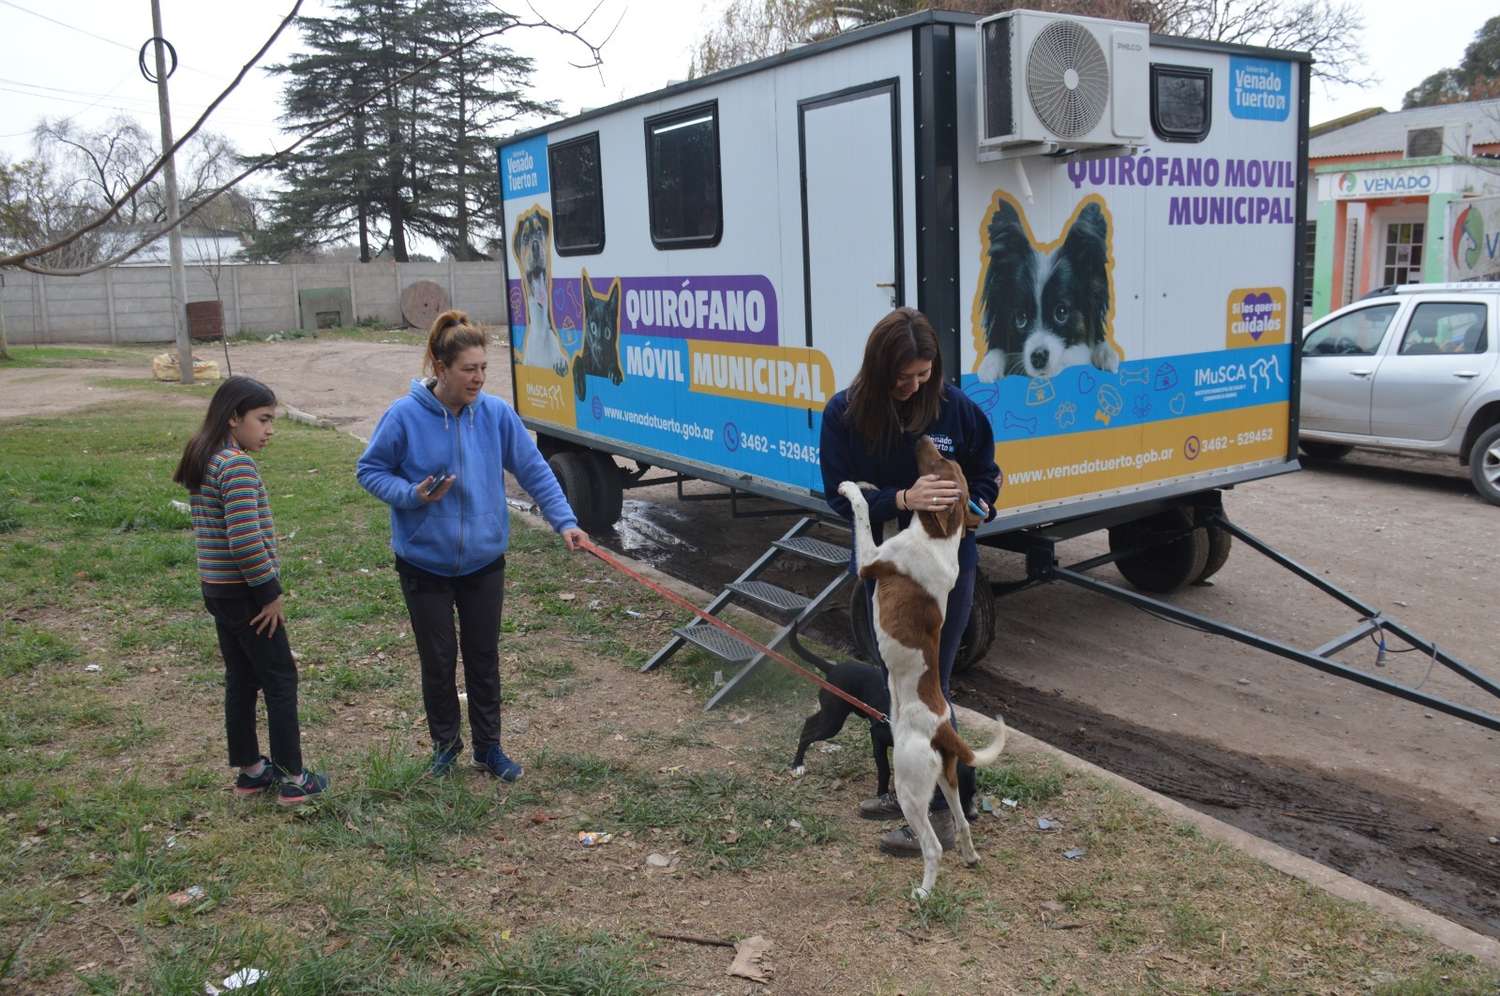 El quirófano móvil municipal pasó por el barrio San Vicente con vacunación y castraciones